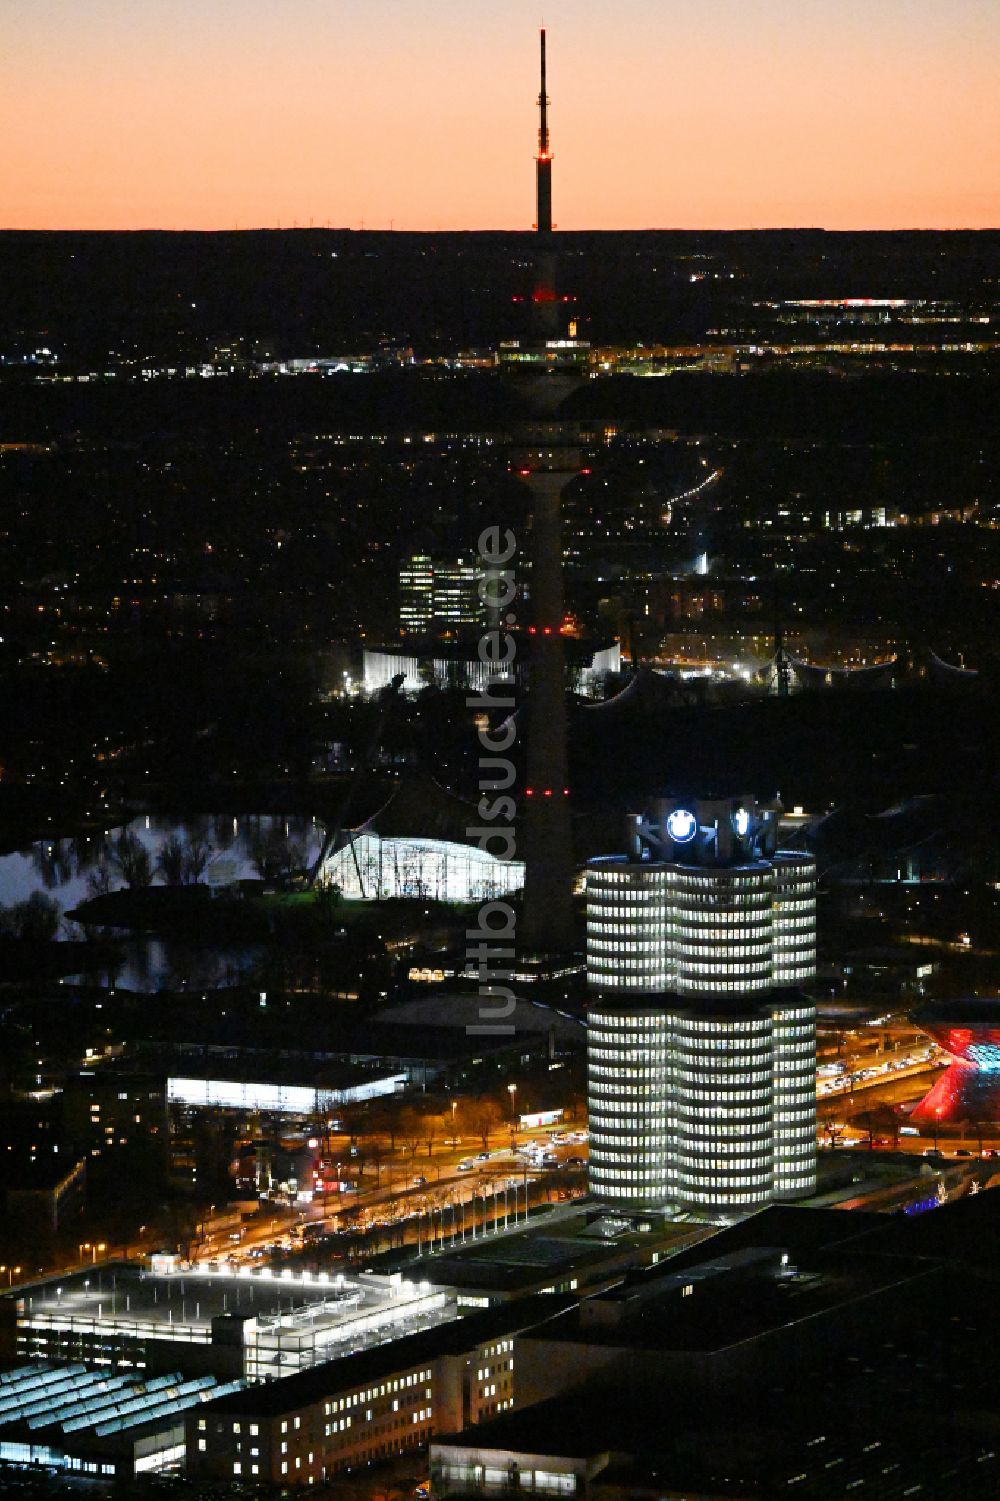 München bei Nacht von oben - Nachtluftbild Unternehmen- Verwaltungsgebäude Vierzylinder der BMW AG in München im Bundesland Bayern, Deutschland